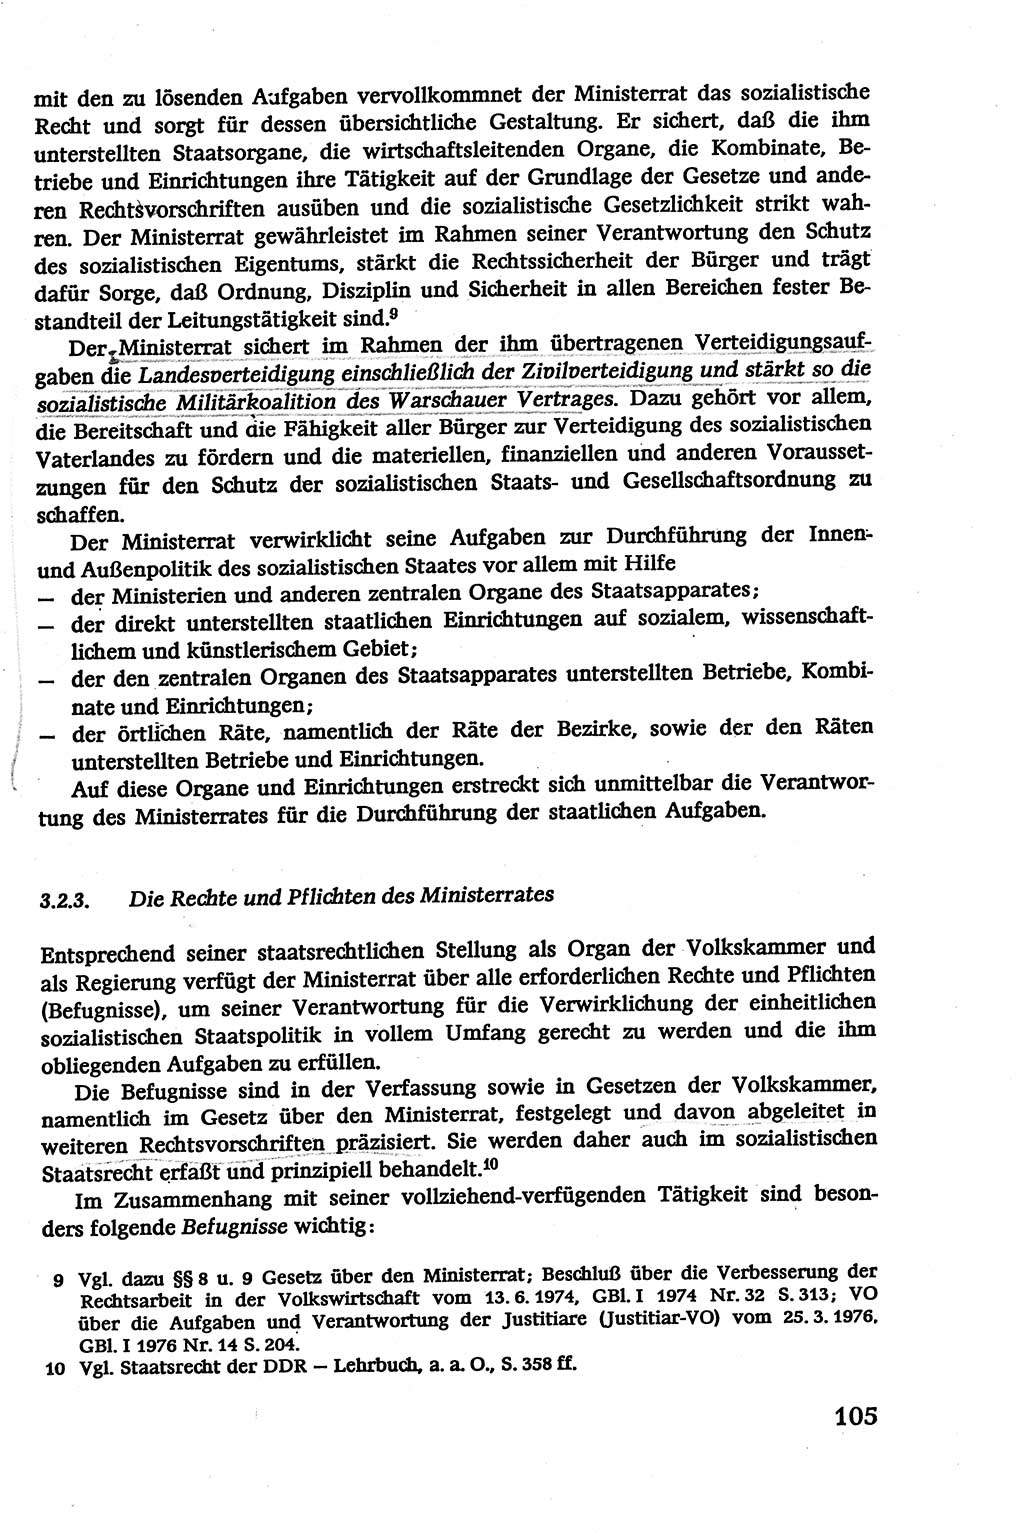 Verwaltungsrecht [Deutsche Demokratische Republik (DDR)], Lehrbuch 1979, Seite 105 (Verw.-R. DDR Lb. 1979, S. 105)